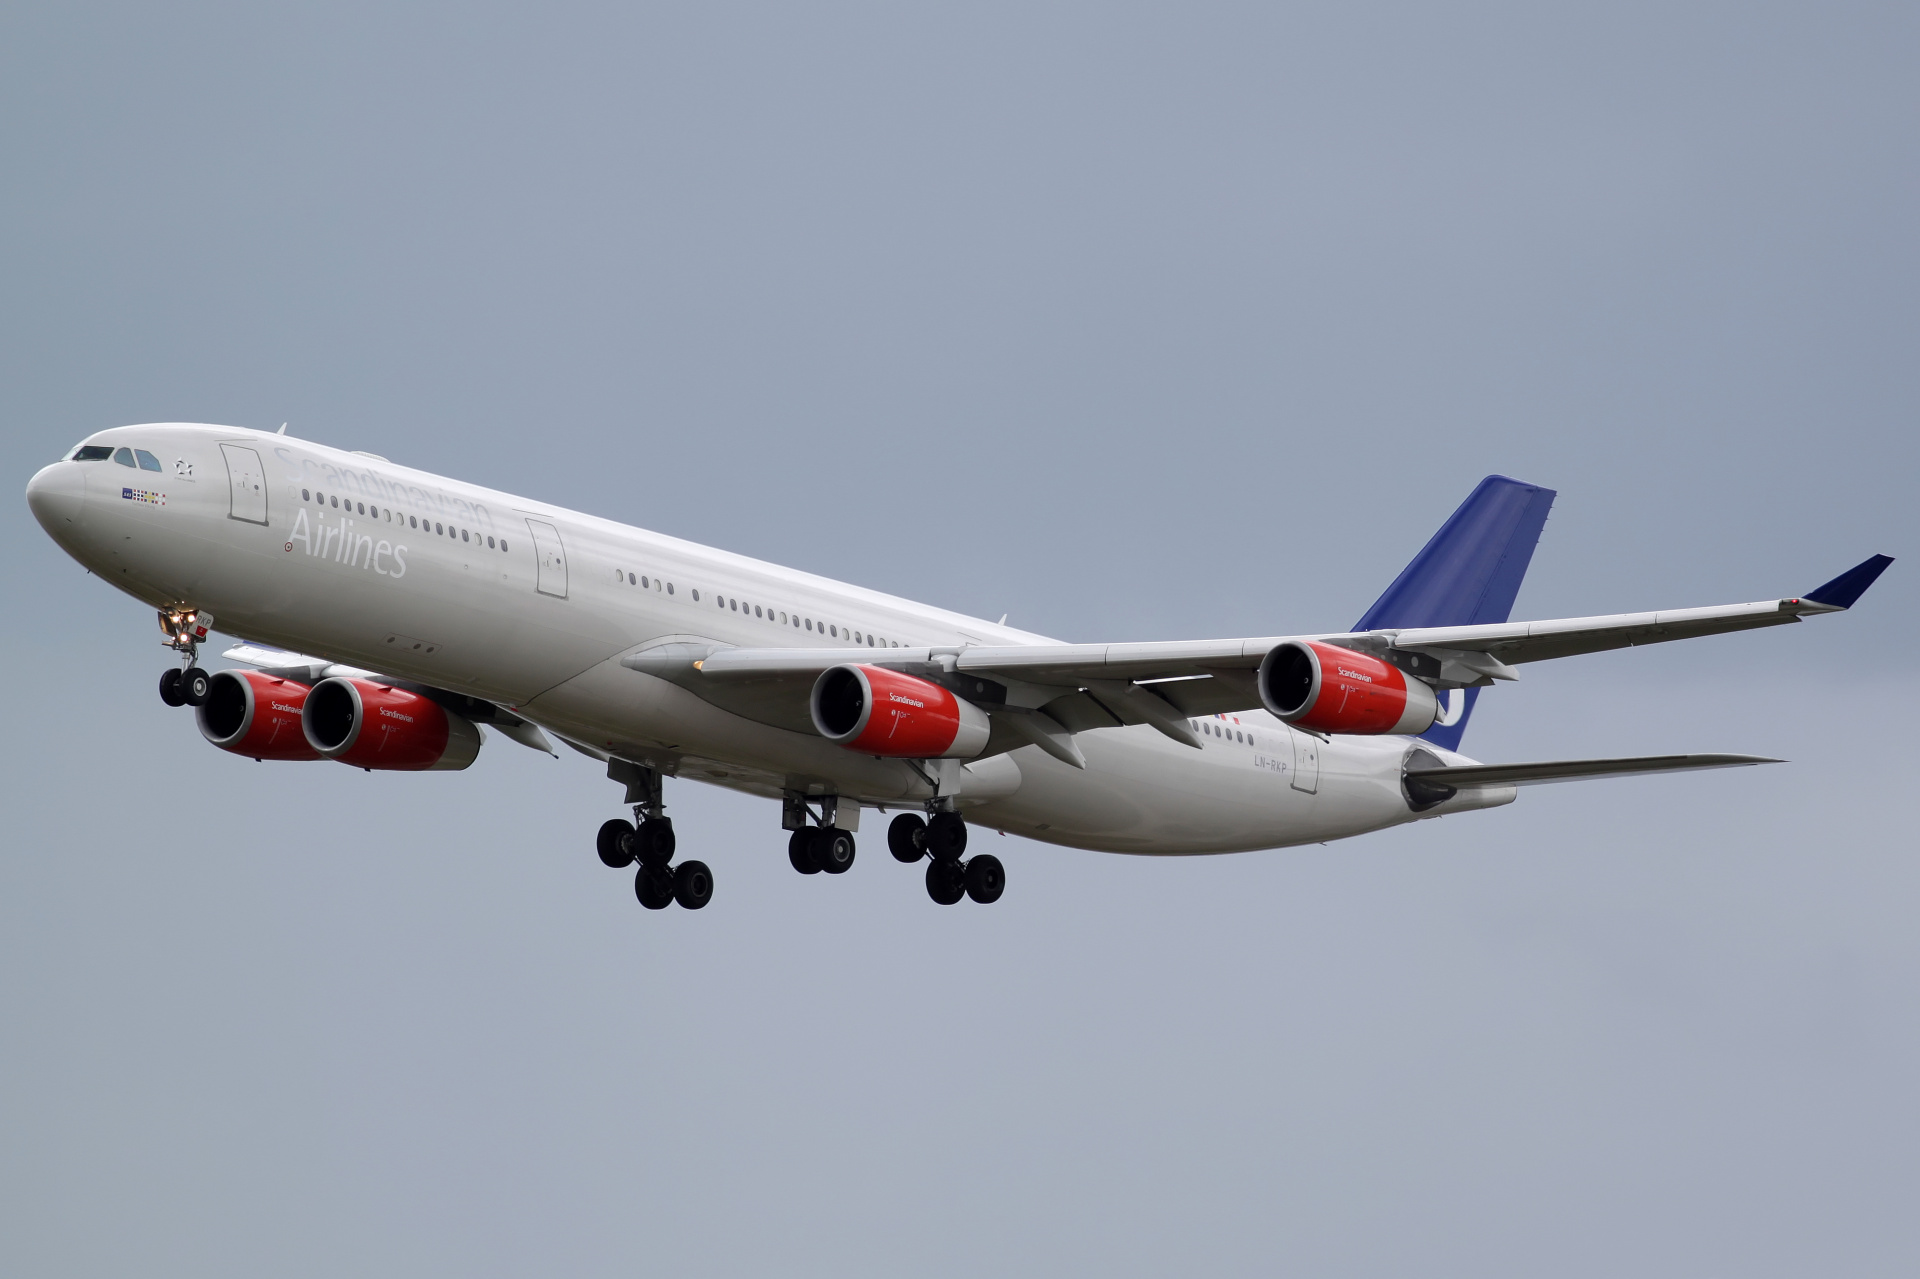 LN-RKP, SAS Scandinavian Airlines (Aircraft » Copenhagen Kastrup Spotting » Airbus A340-300)